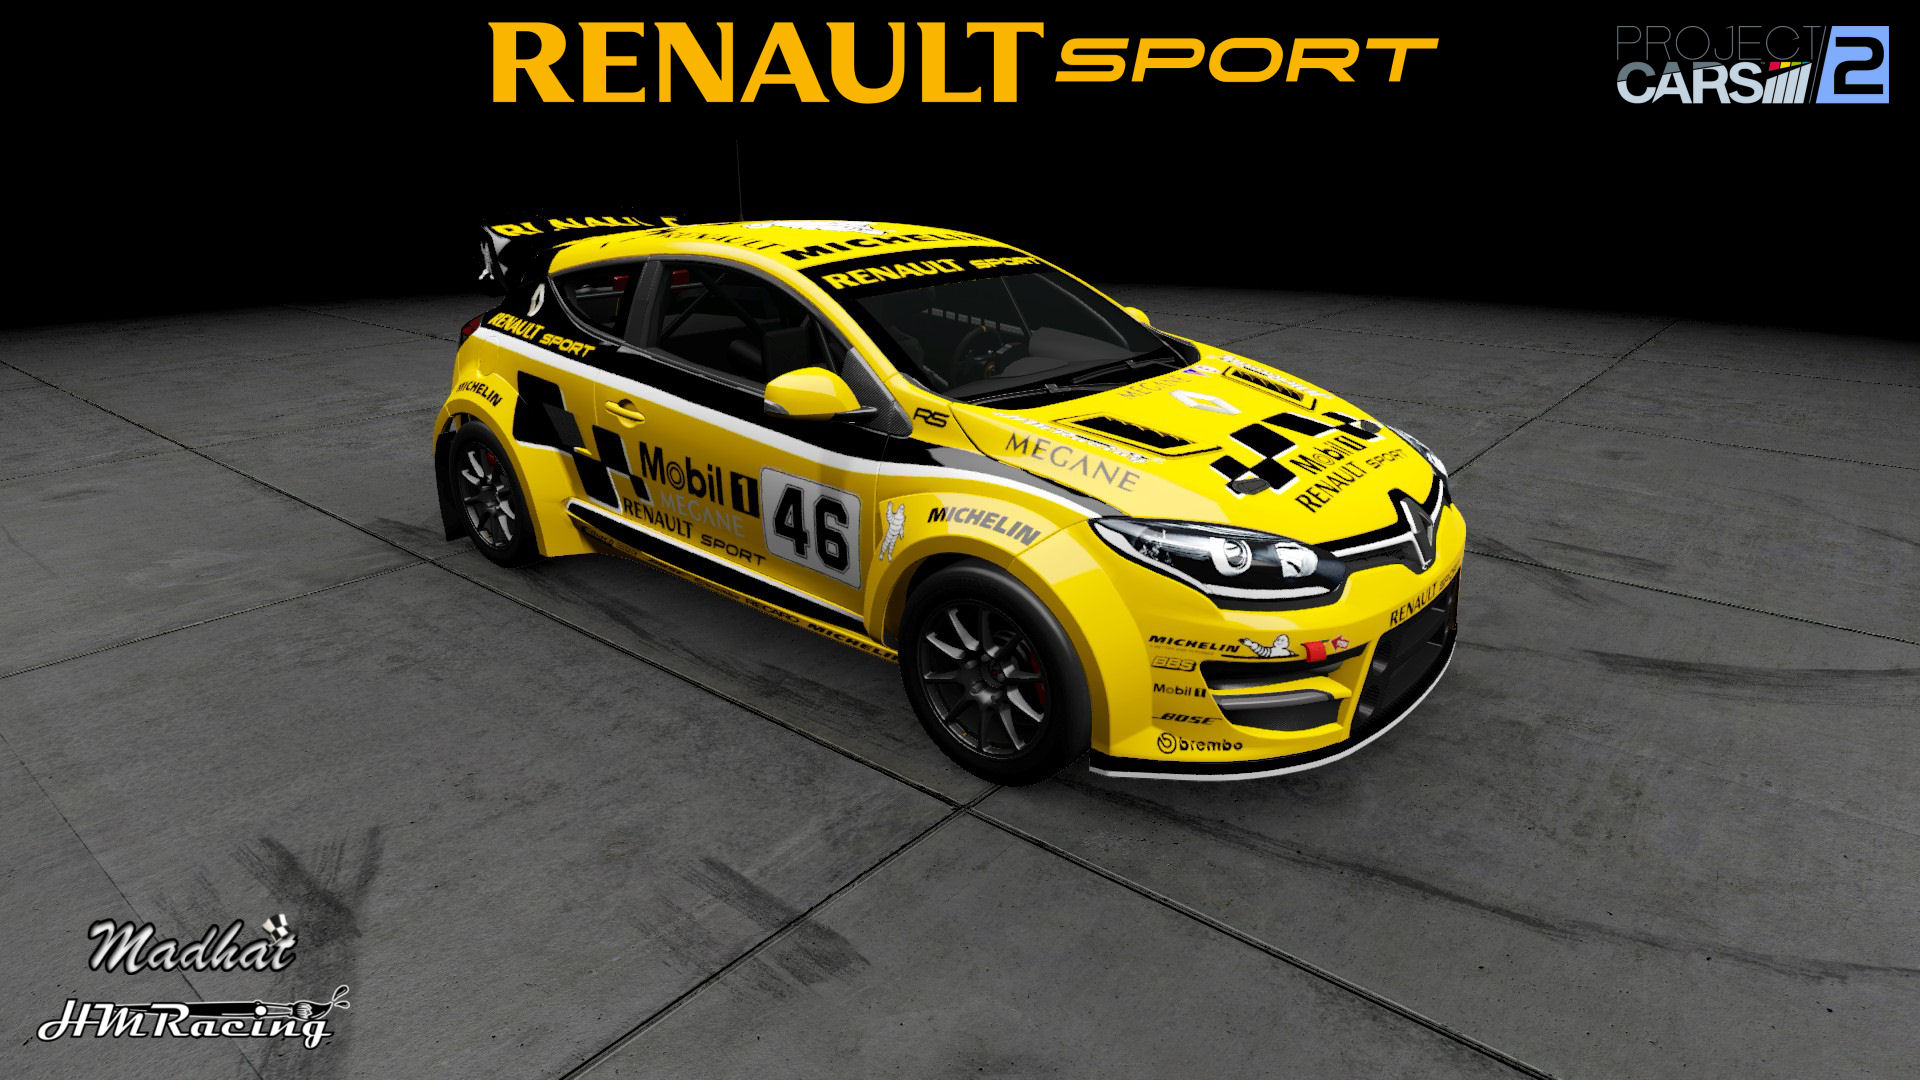 RS Renault Megane RX v2 01.jpg